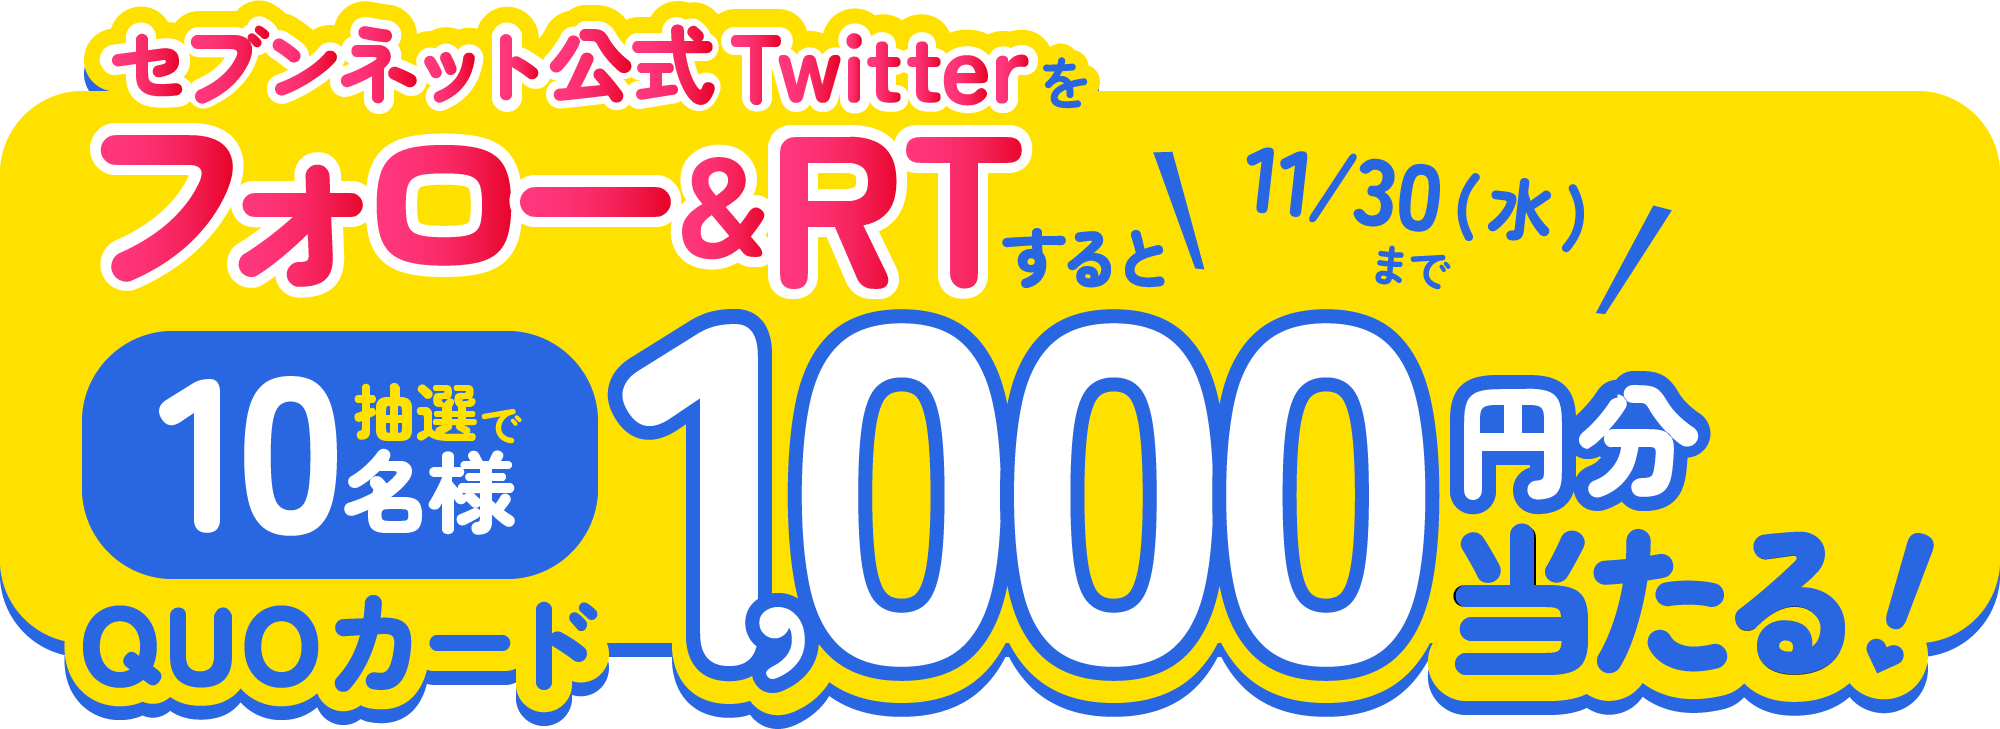 セブンネット公式Twitterをフォロー&RTすると9/30(金)まで抽選で10名様にQUOカードが1000円分当たる!